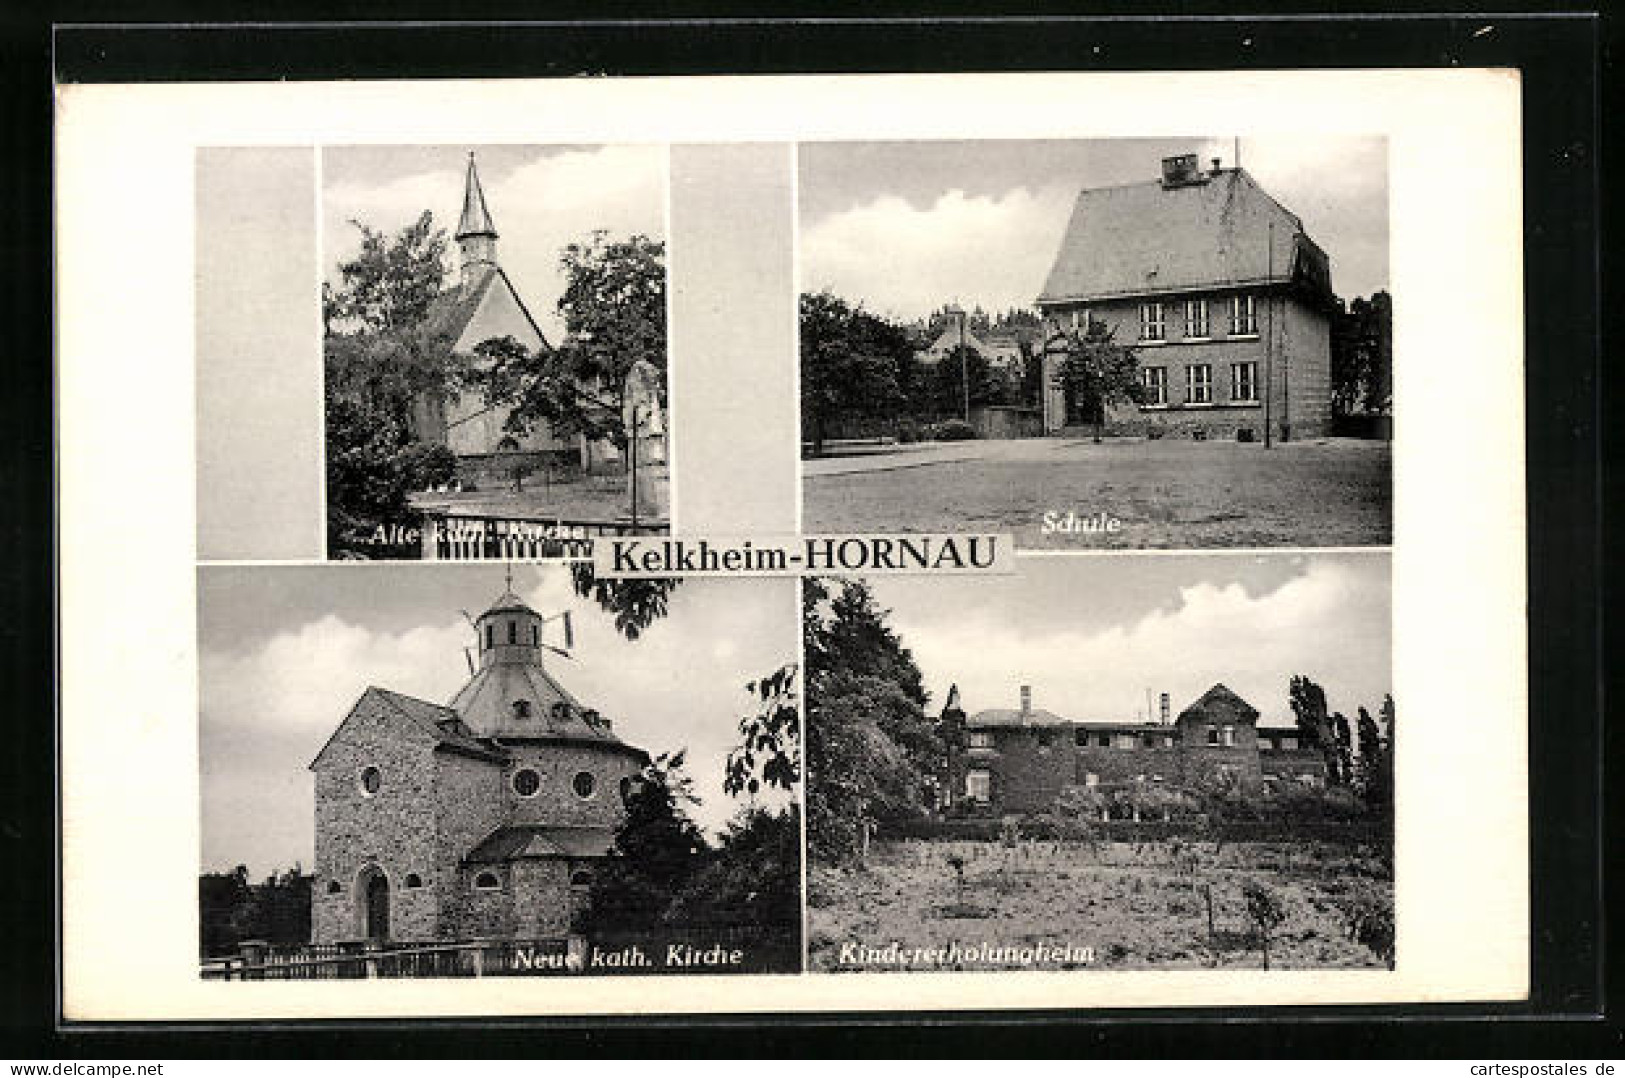 AK Kelkheim-Hornau, Schule, Alte Kath. Kirche, Neue Kath. Kirche, Kindererholungsheim  - Kelkheim